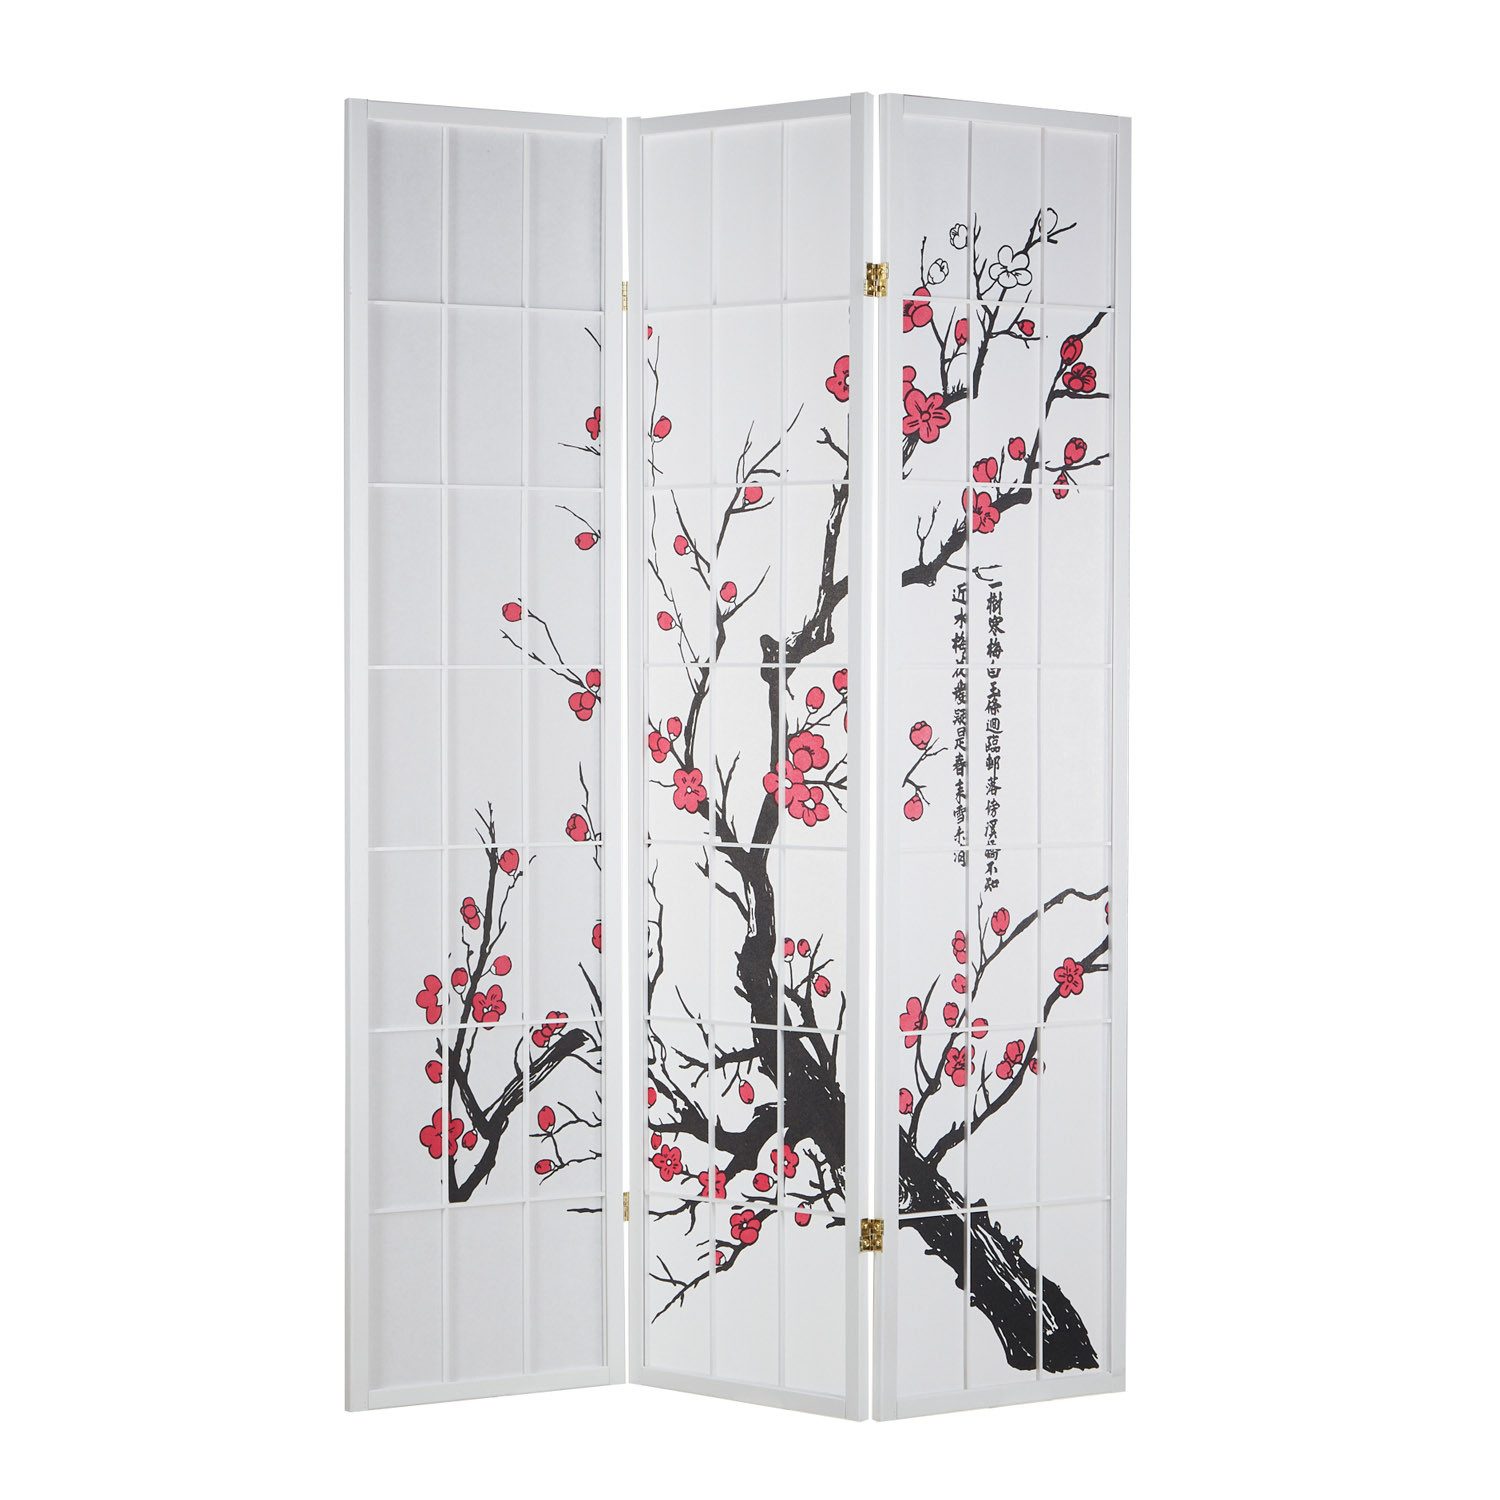 Homestyle4u Paravent Raumteiler Kirschmuster Kirschblüten Weiß Sichtschutz Indoor Holz, 3-teilig